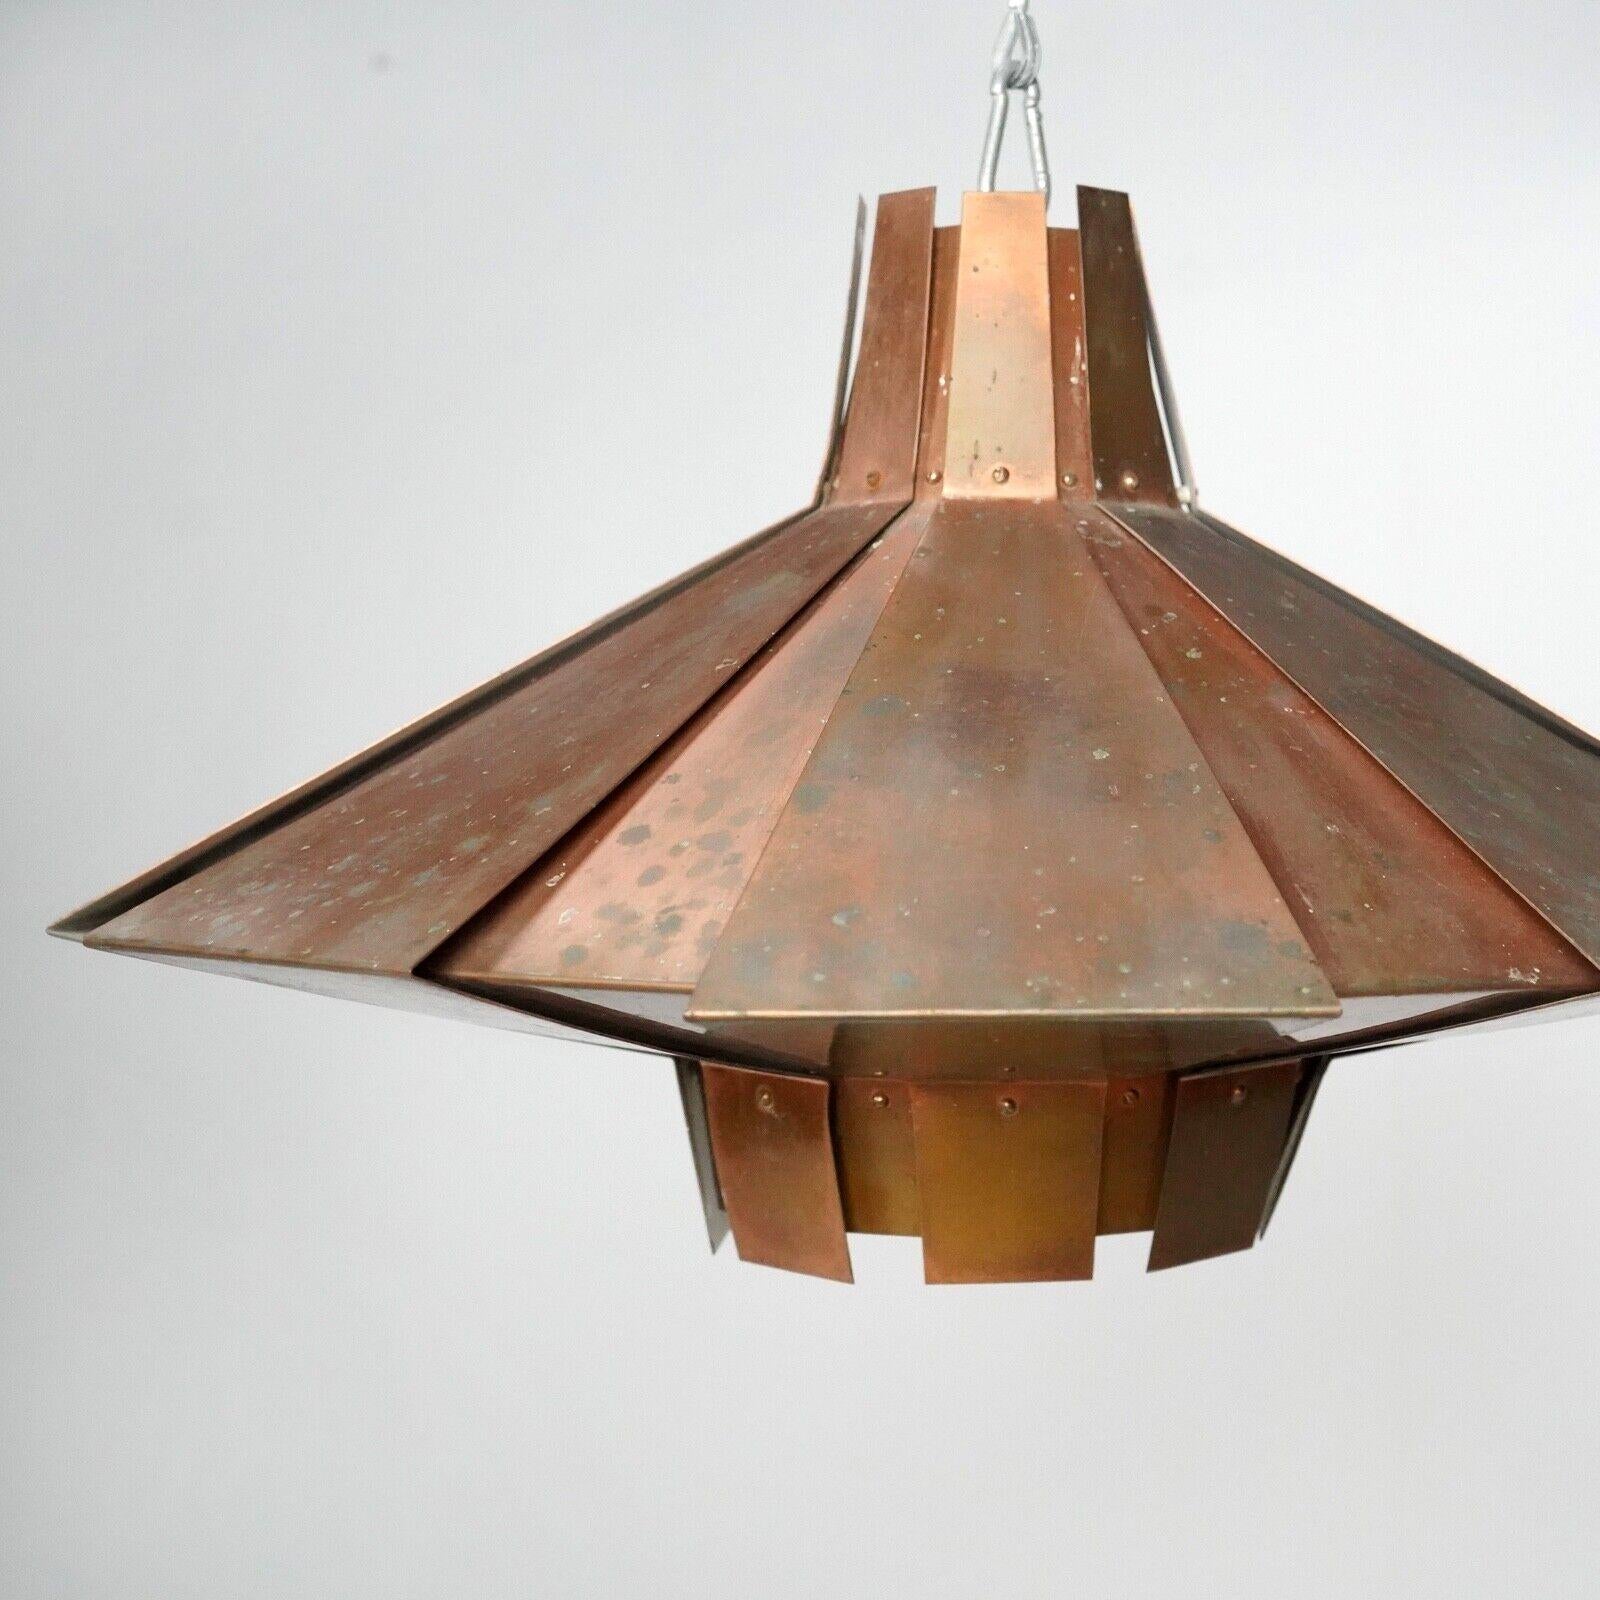 Ce magnifique pendentif en cuivre patiné est l'œuvre de Werner Schou.
 Sa finition cuivre unique et son design scandinave intemporel ajouteront une touche de sophistication à n'importe quel intérieur. 
Fabriqué à partir de feuilles de cuivre, le